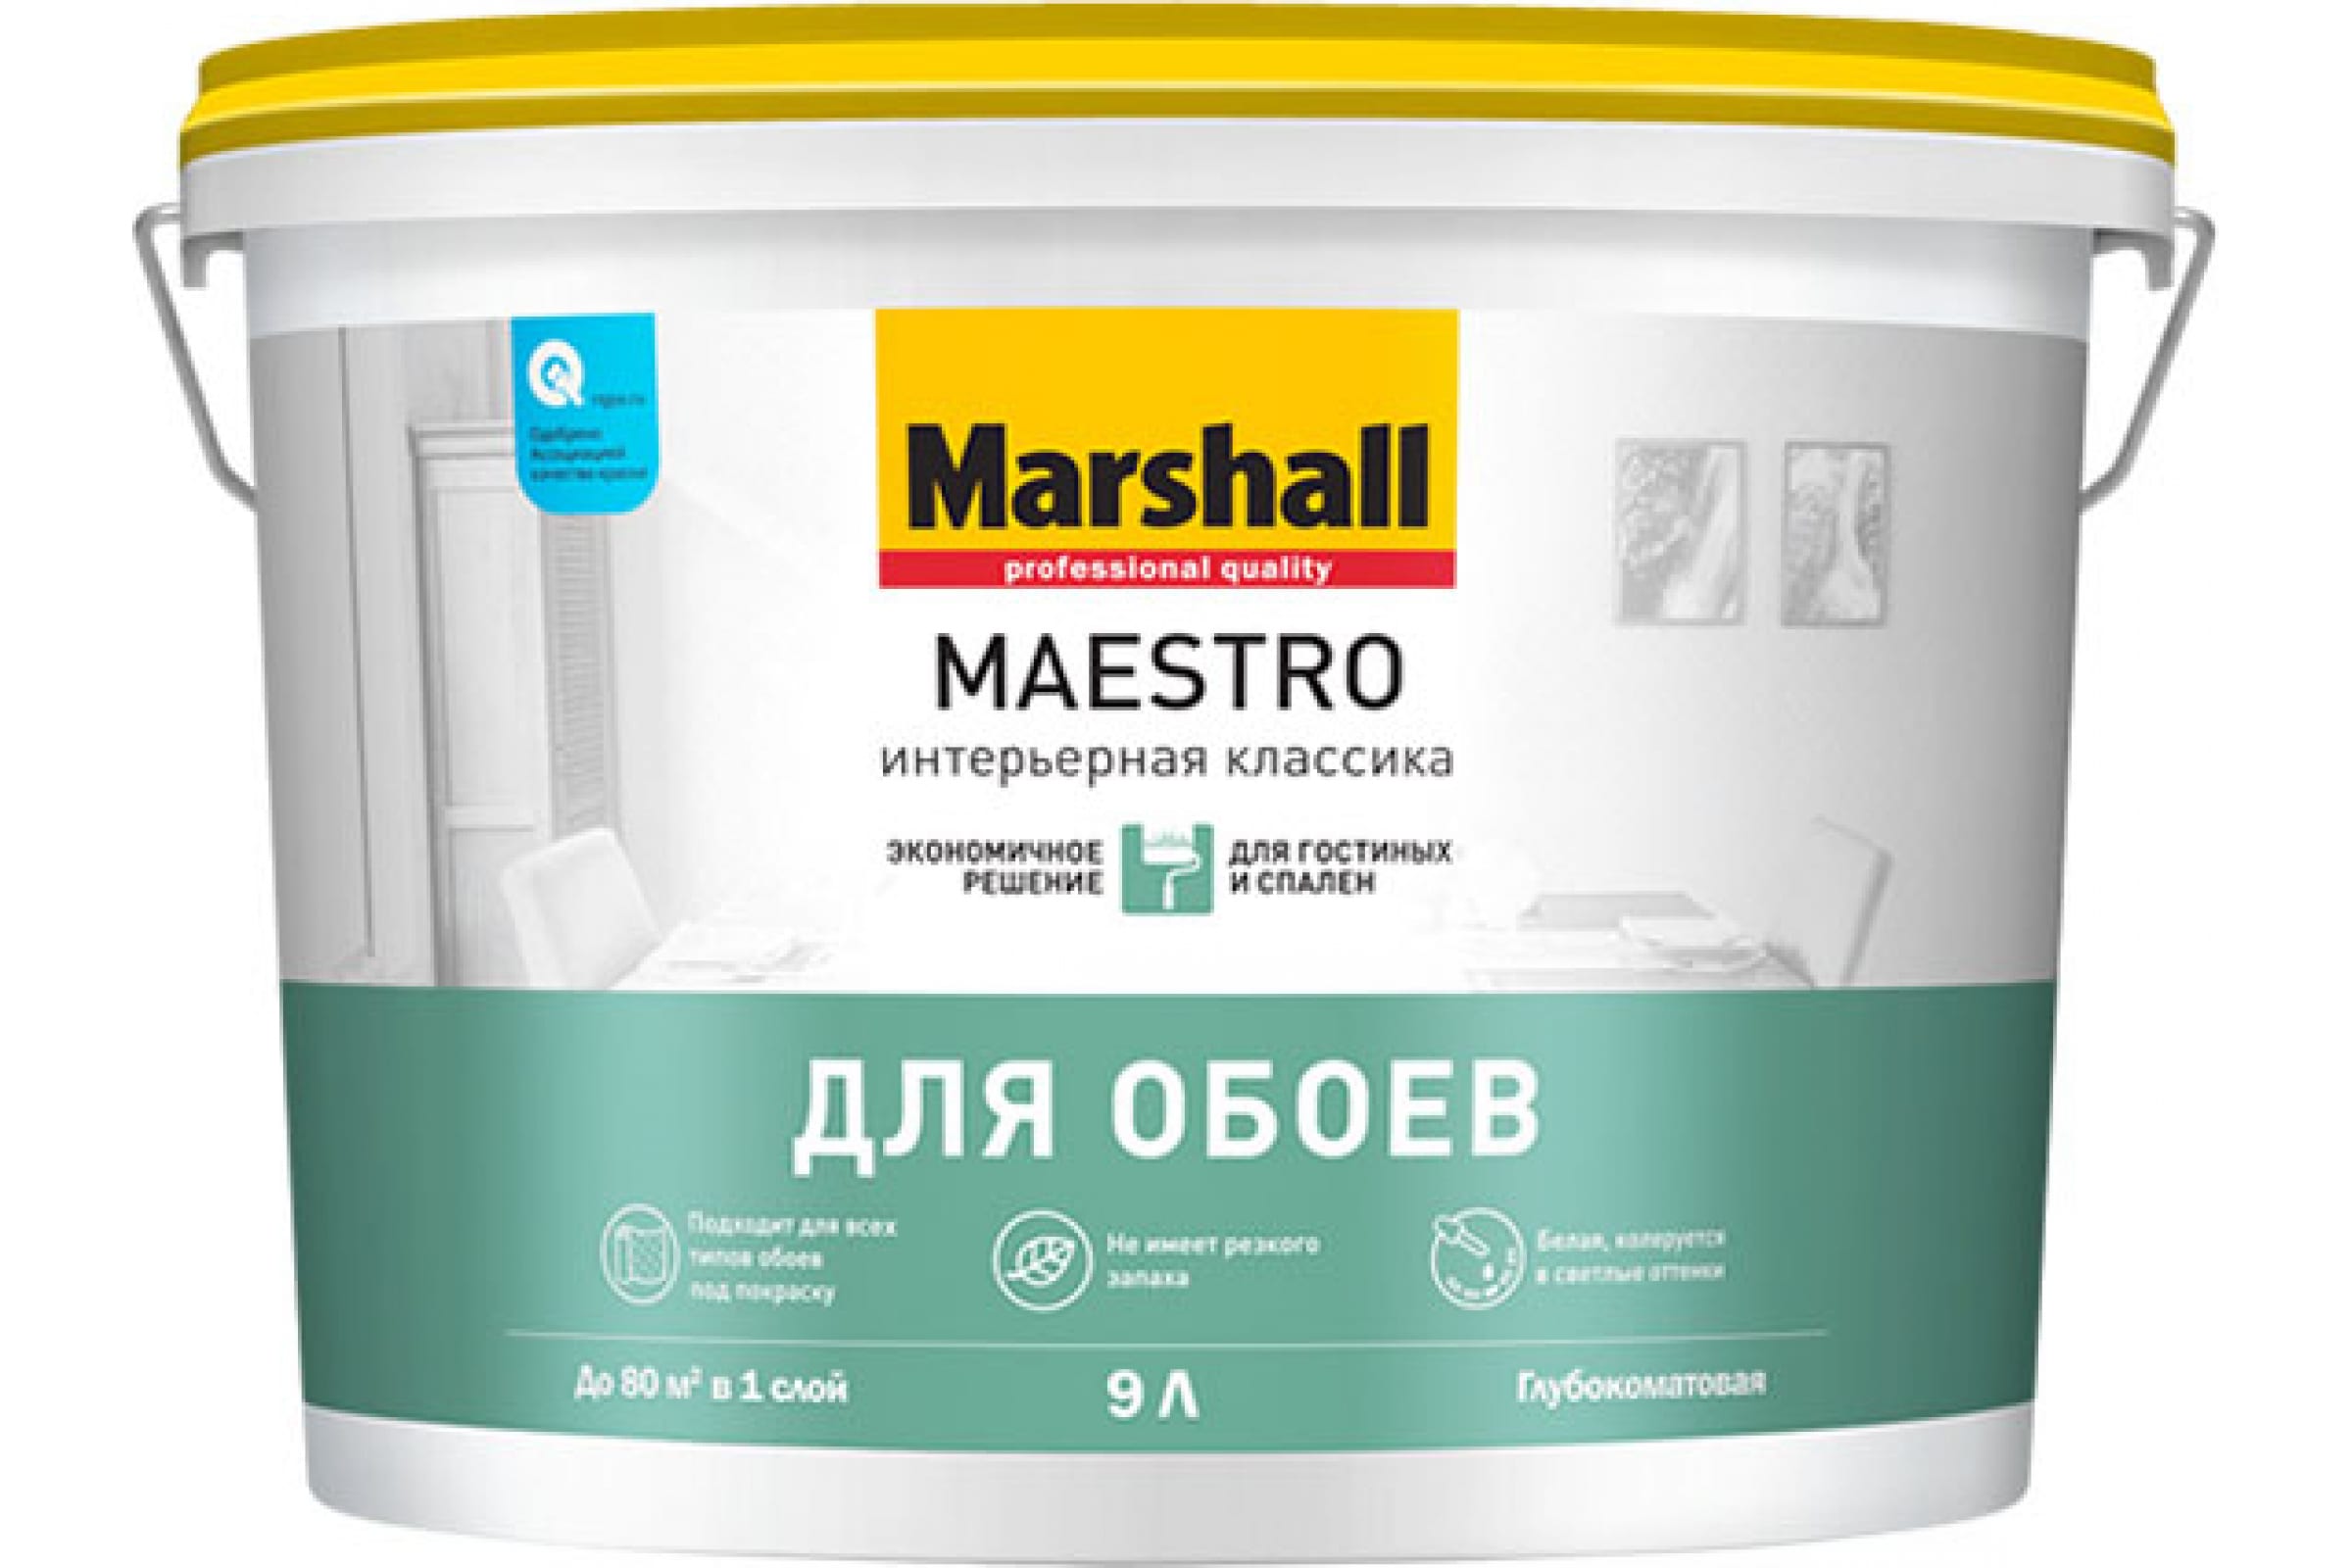 фото Marshall maestro интерьерная классика краска для стен и потолков, глубокоматовая, база bw